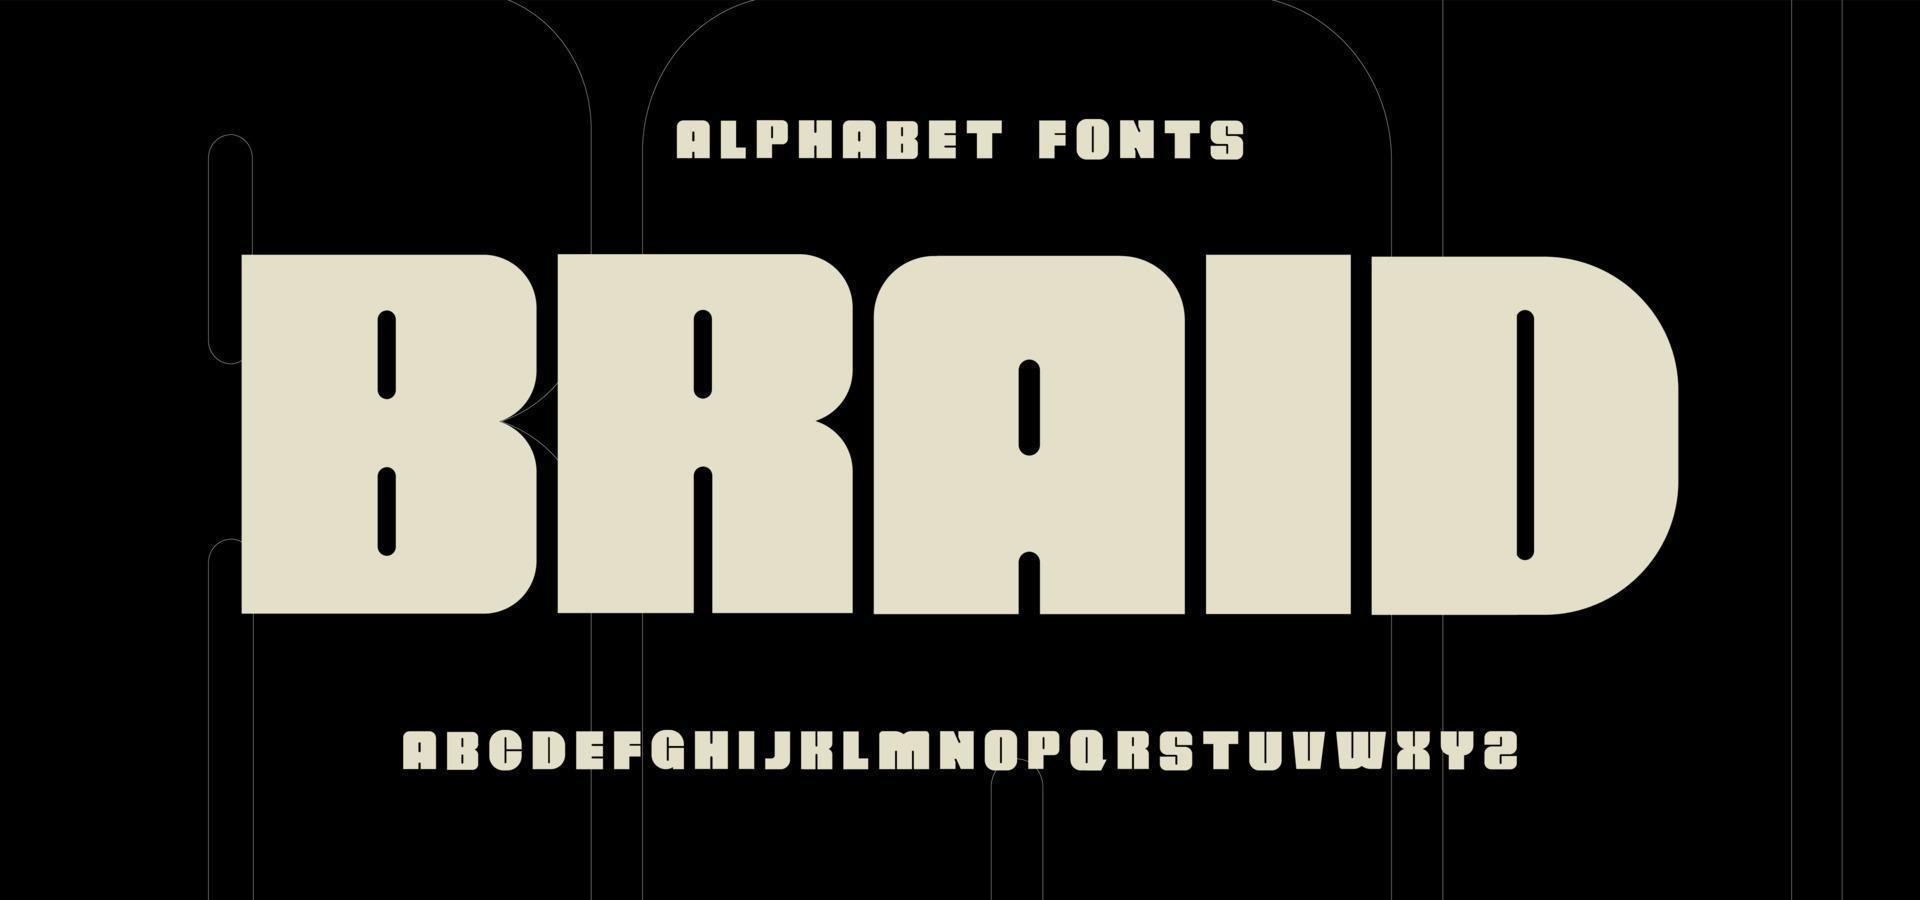 Super fette Alphabetschrift. Urban Classy Font Magazin Typografie vektor